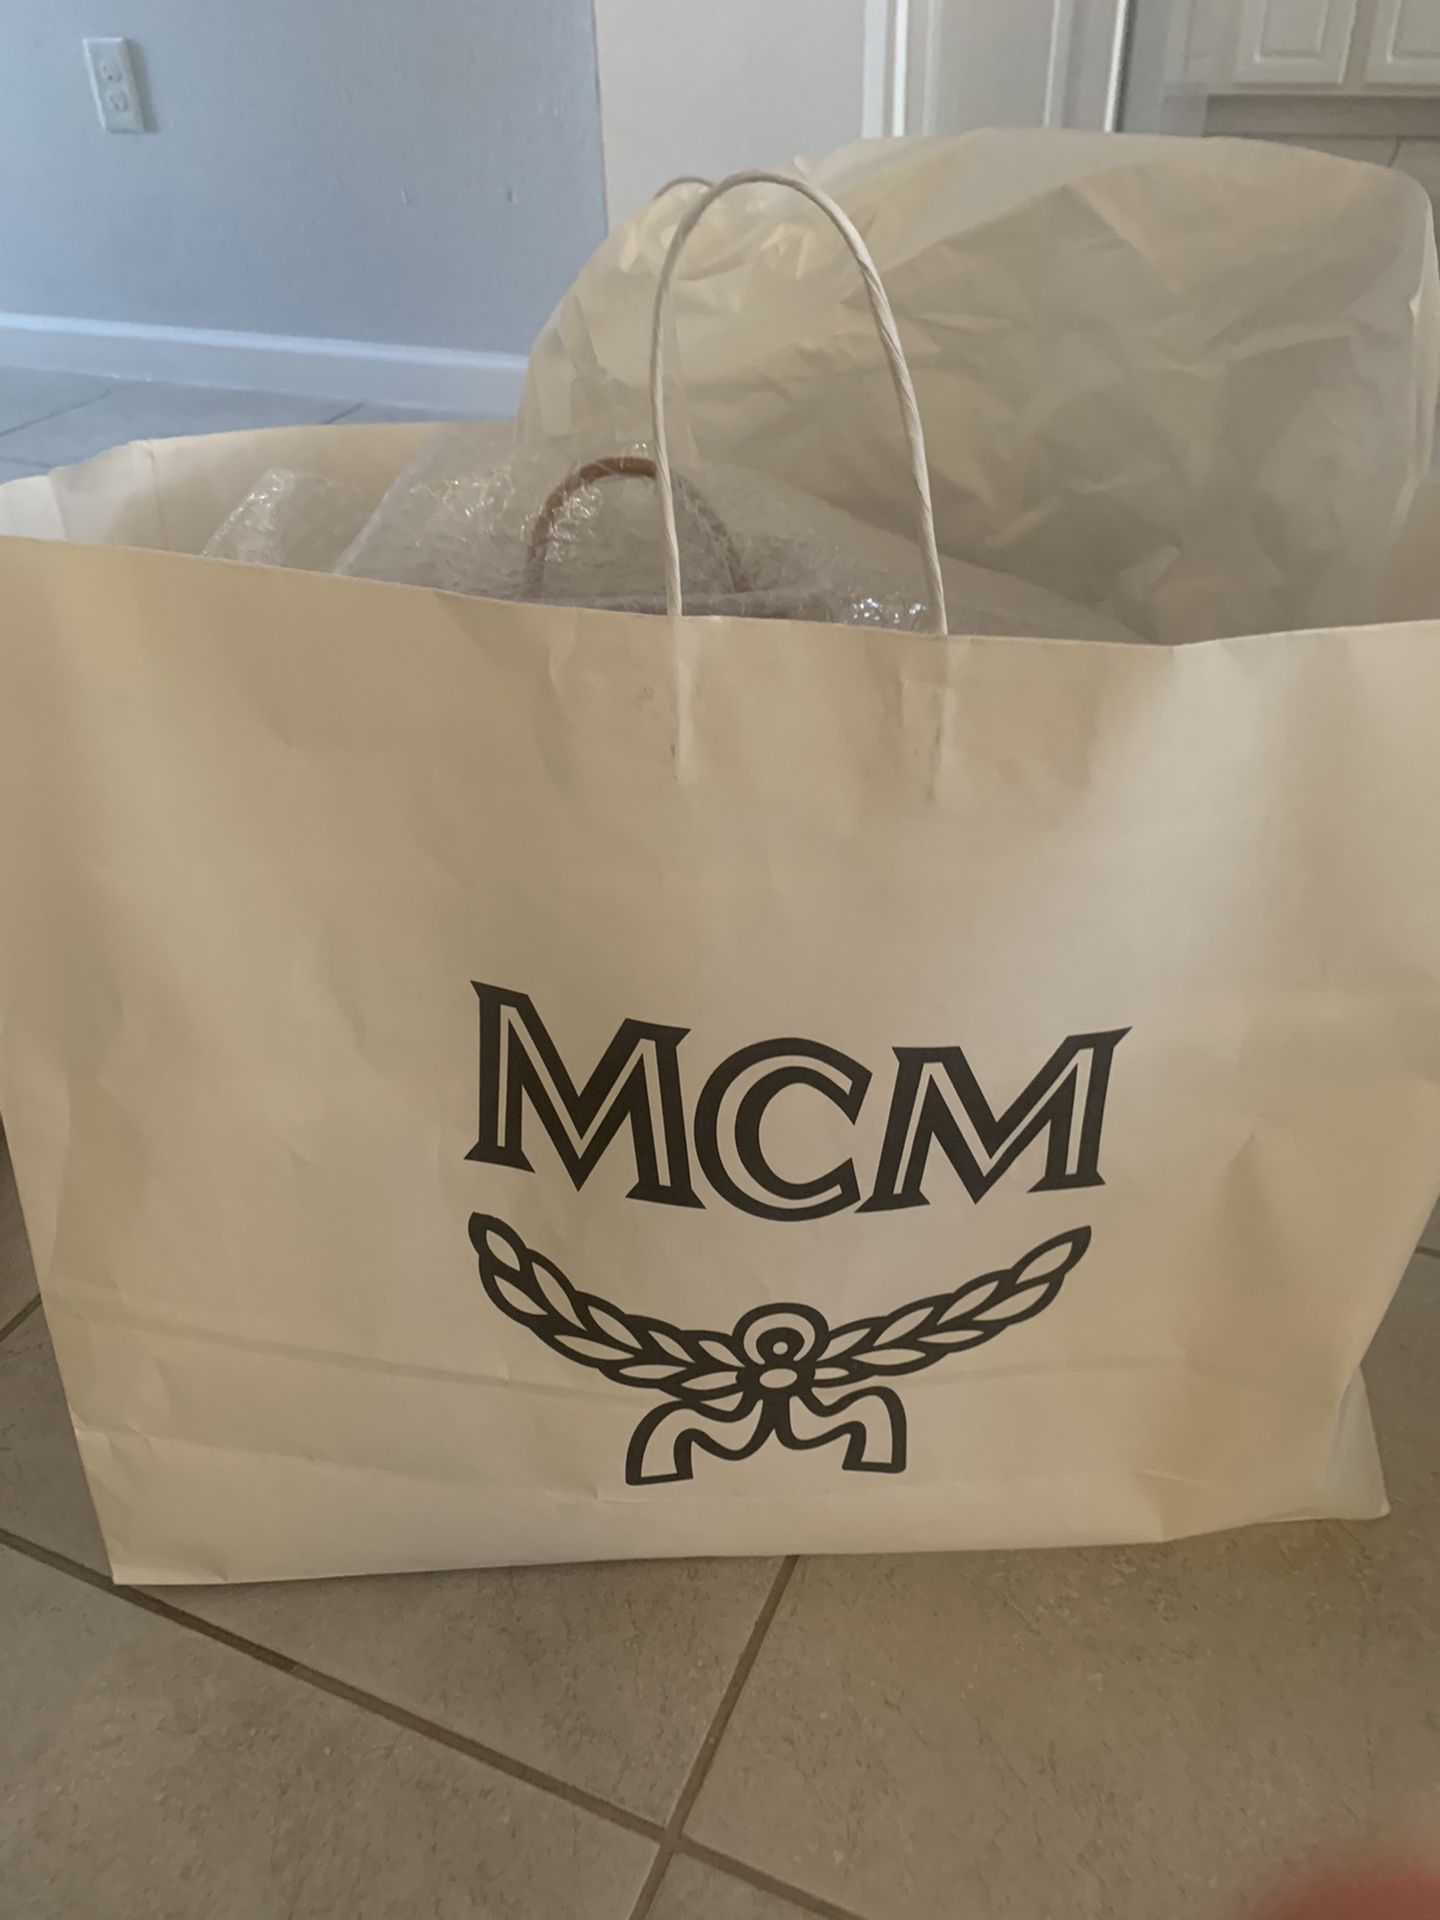 Mcm Bookbag for Sale in Miami, FL - OfferUp